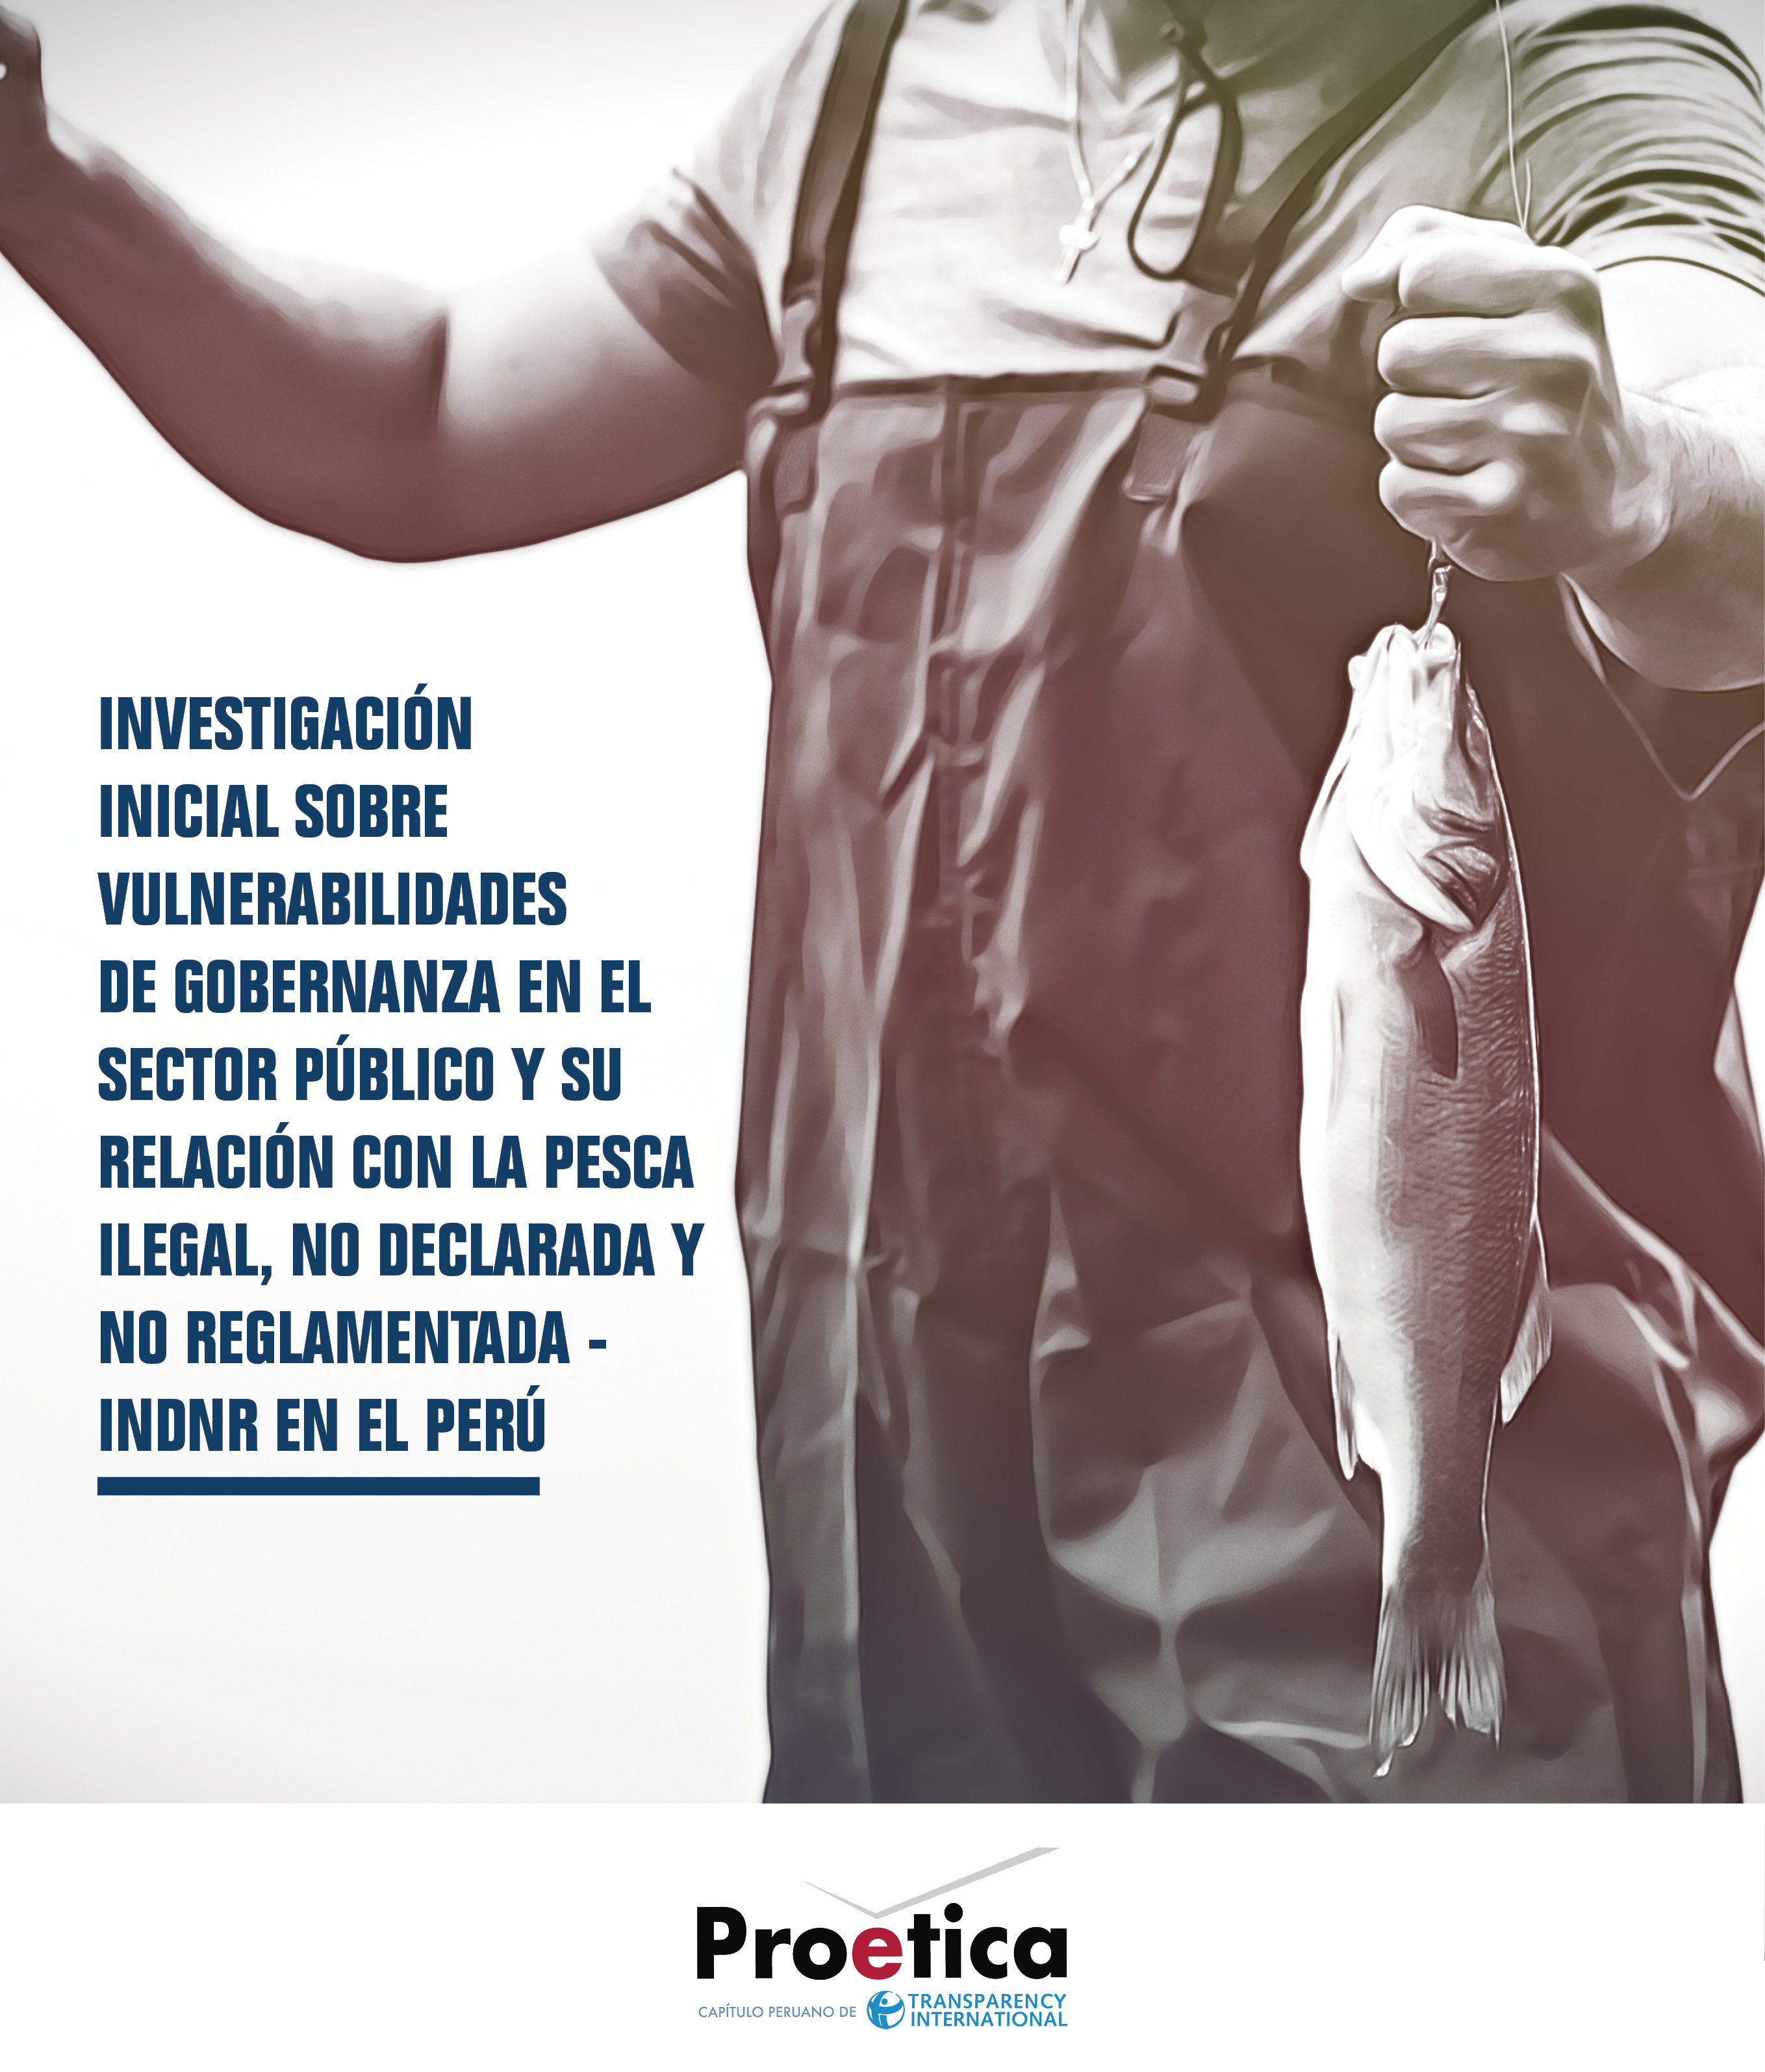 Investigación inicial sobre vulnerabilidades de gobernanza  en el sector público y su relación con la pesca ilegal, no declarada y no reglamentada- INDNR en el Perú